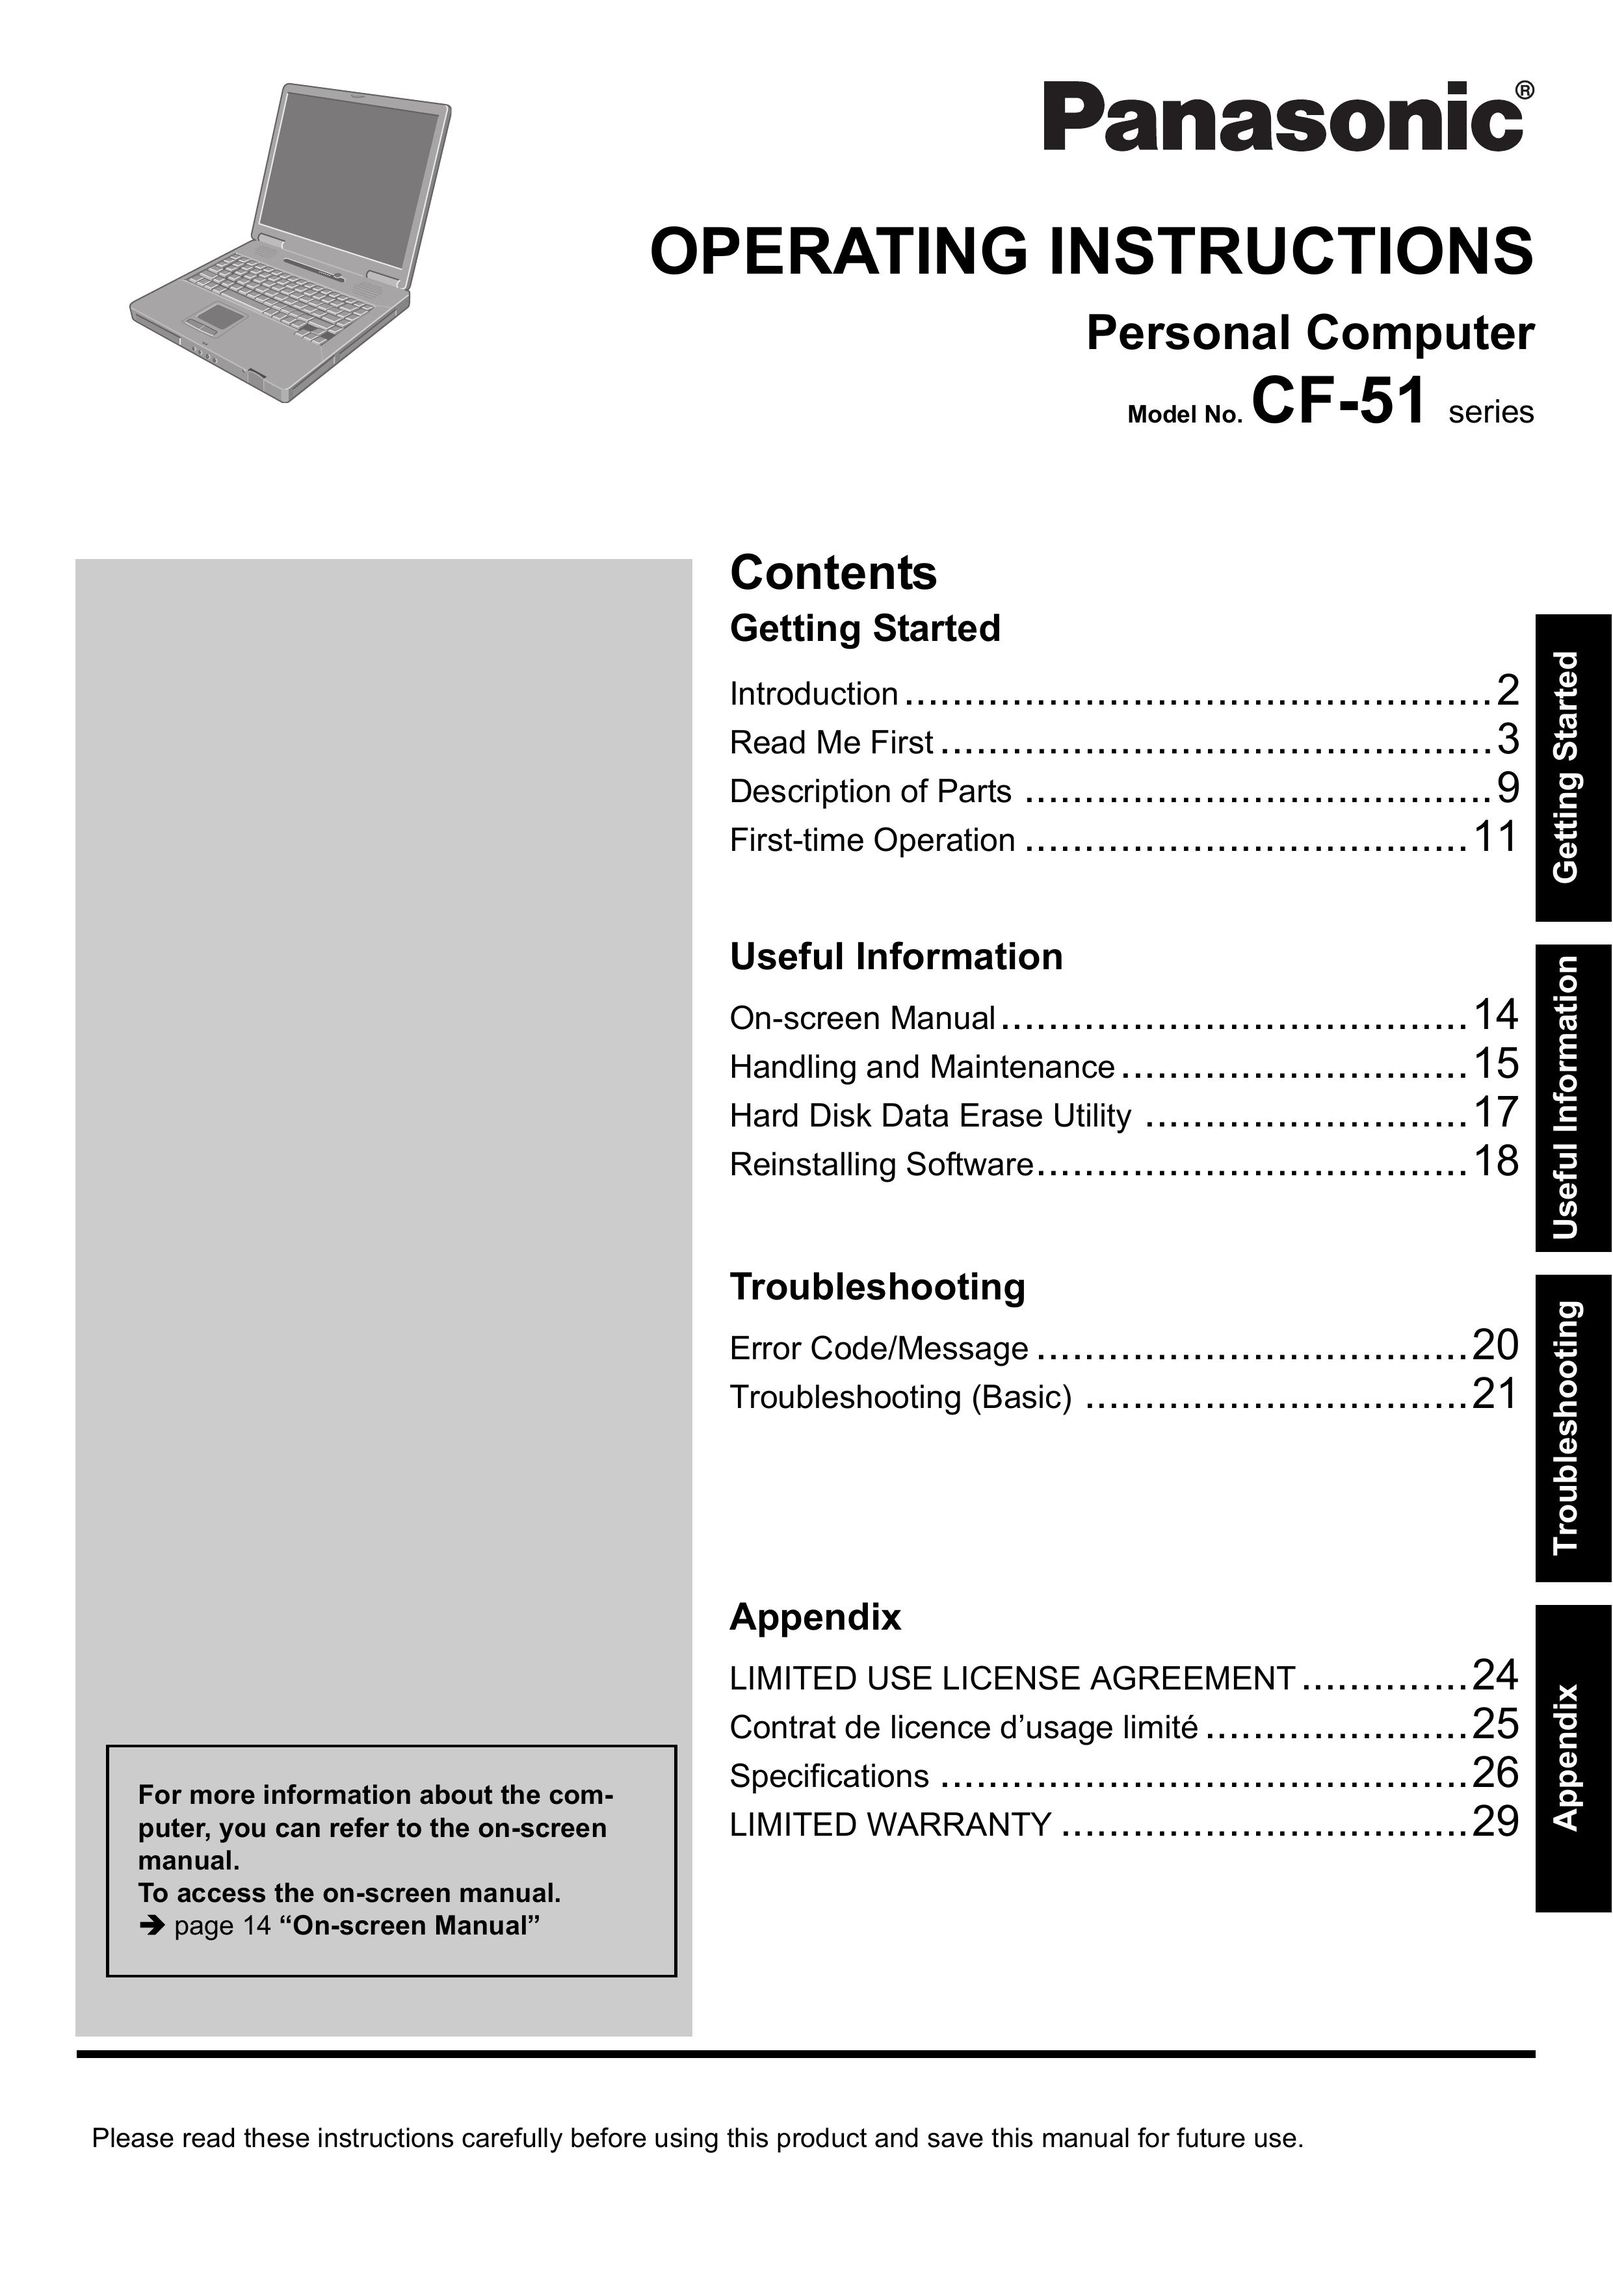 Panasonic CF-51 Personal Computer User Manual